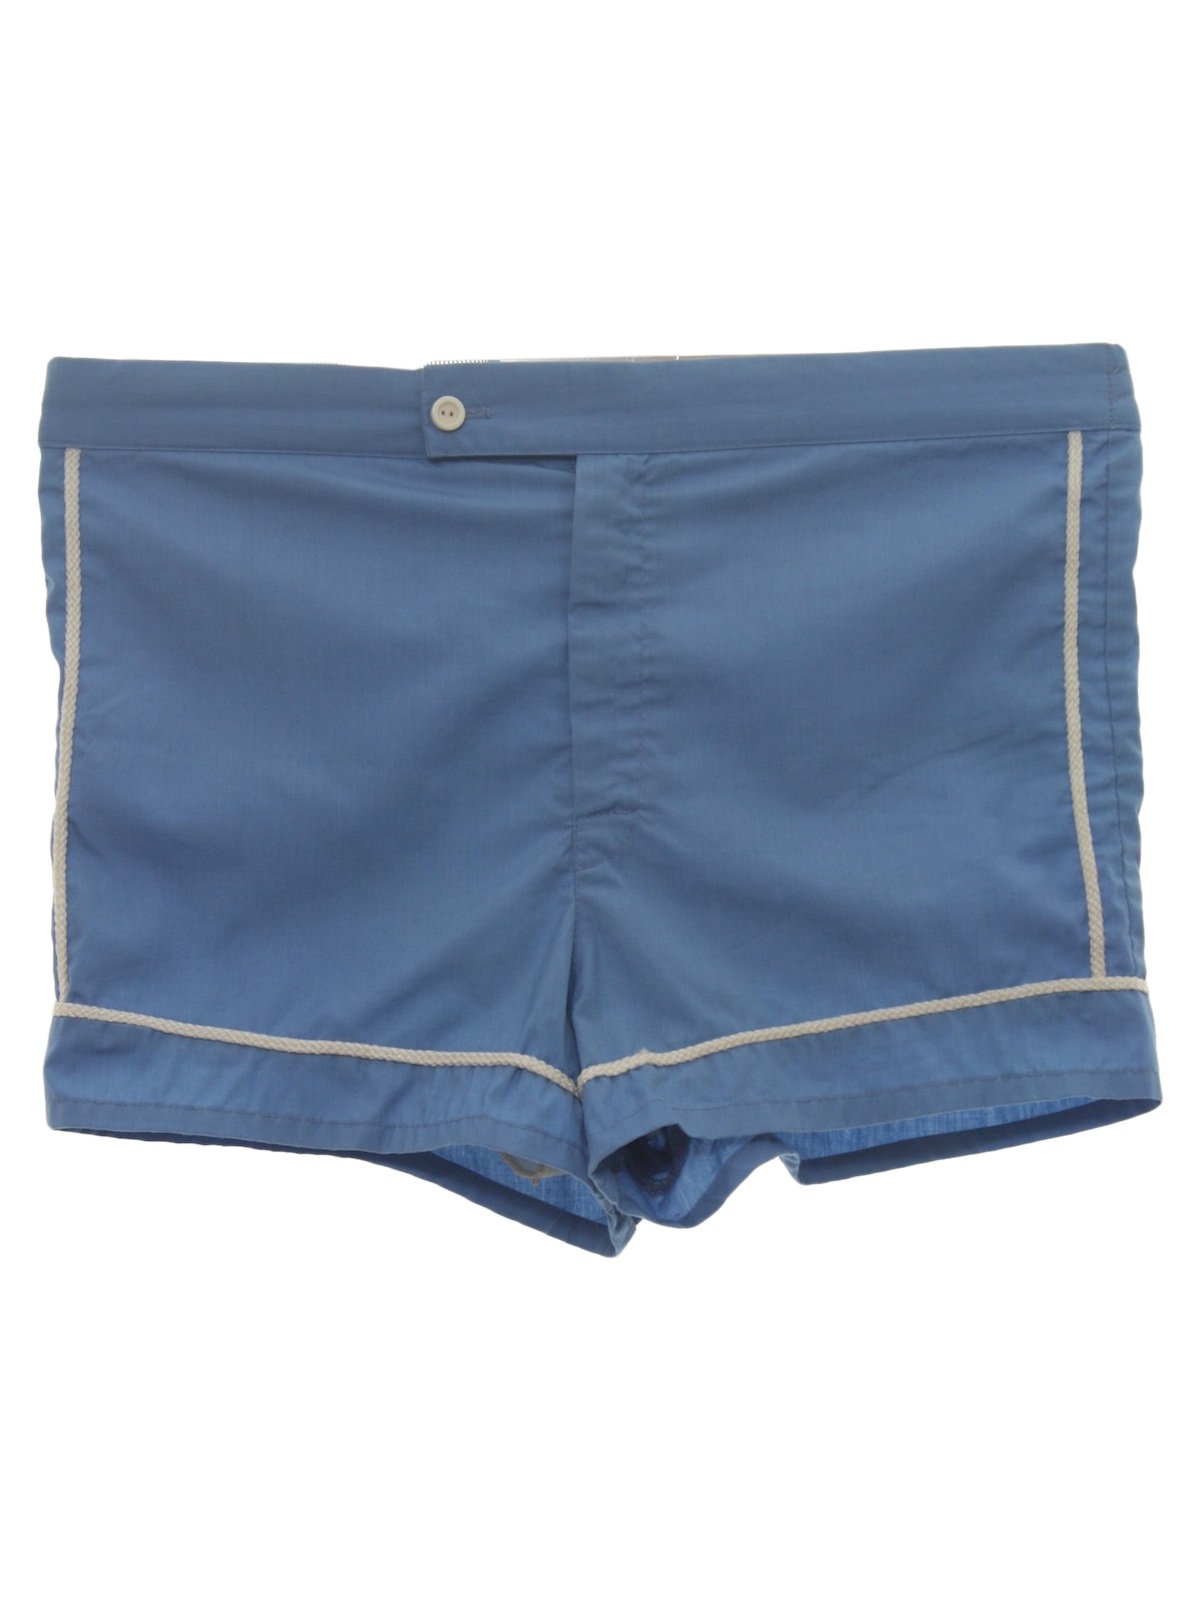 1970's Retro Swimsuit/Swimwear: 70s -Catalina- Mens light blue ...